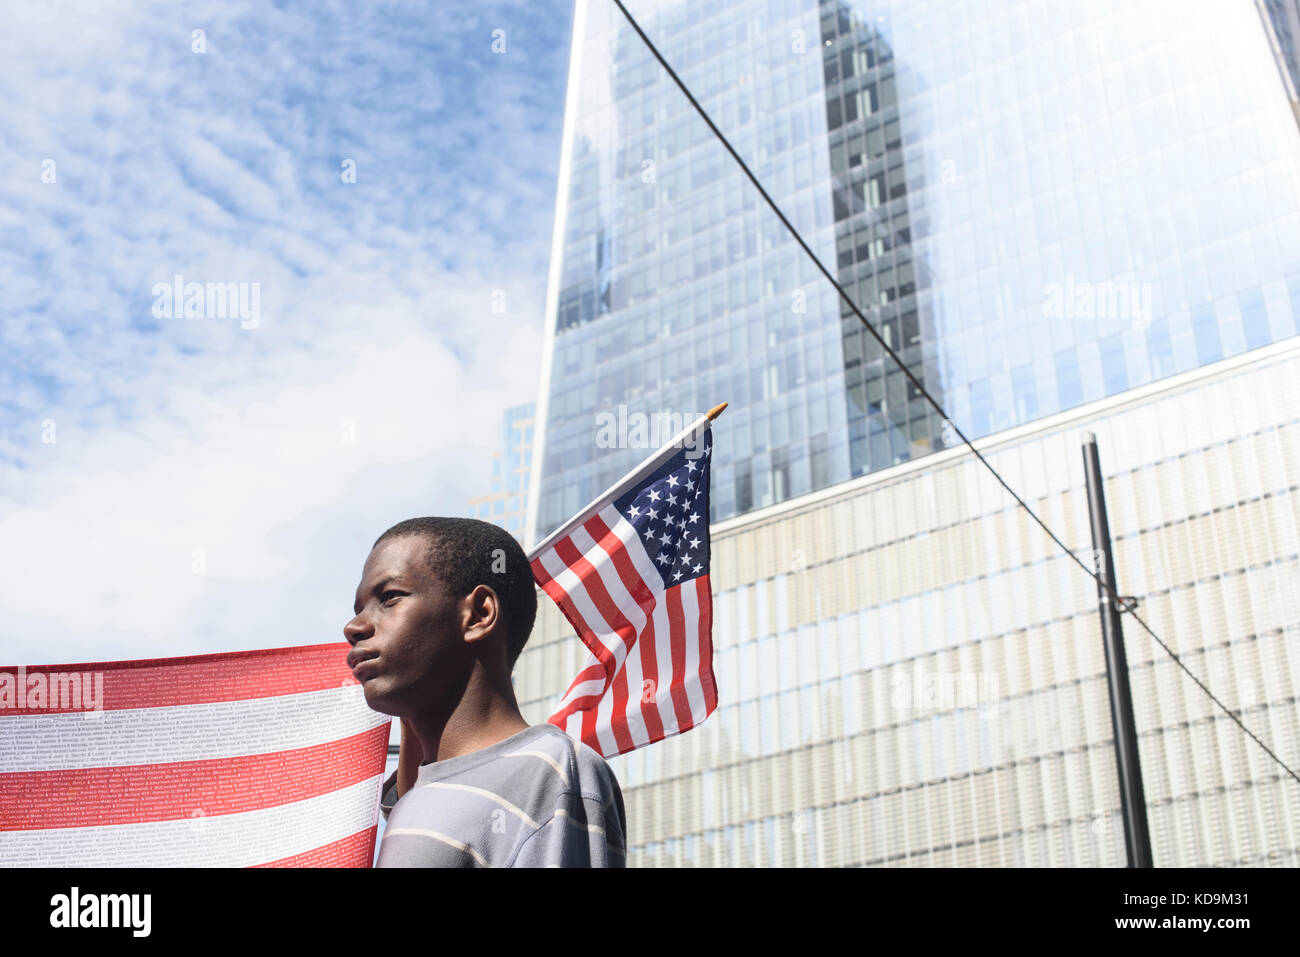 Un jeune américain tient un drapeau pour la comémoration des attentats du 9-11. Toutes les victimes seront écrites sur le drapeau. Le 16 settembre 20 Foto Stock